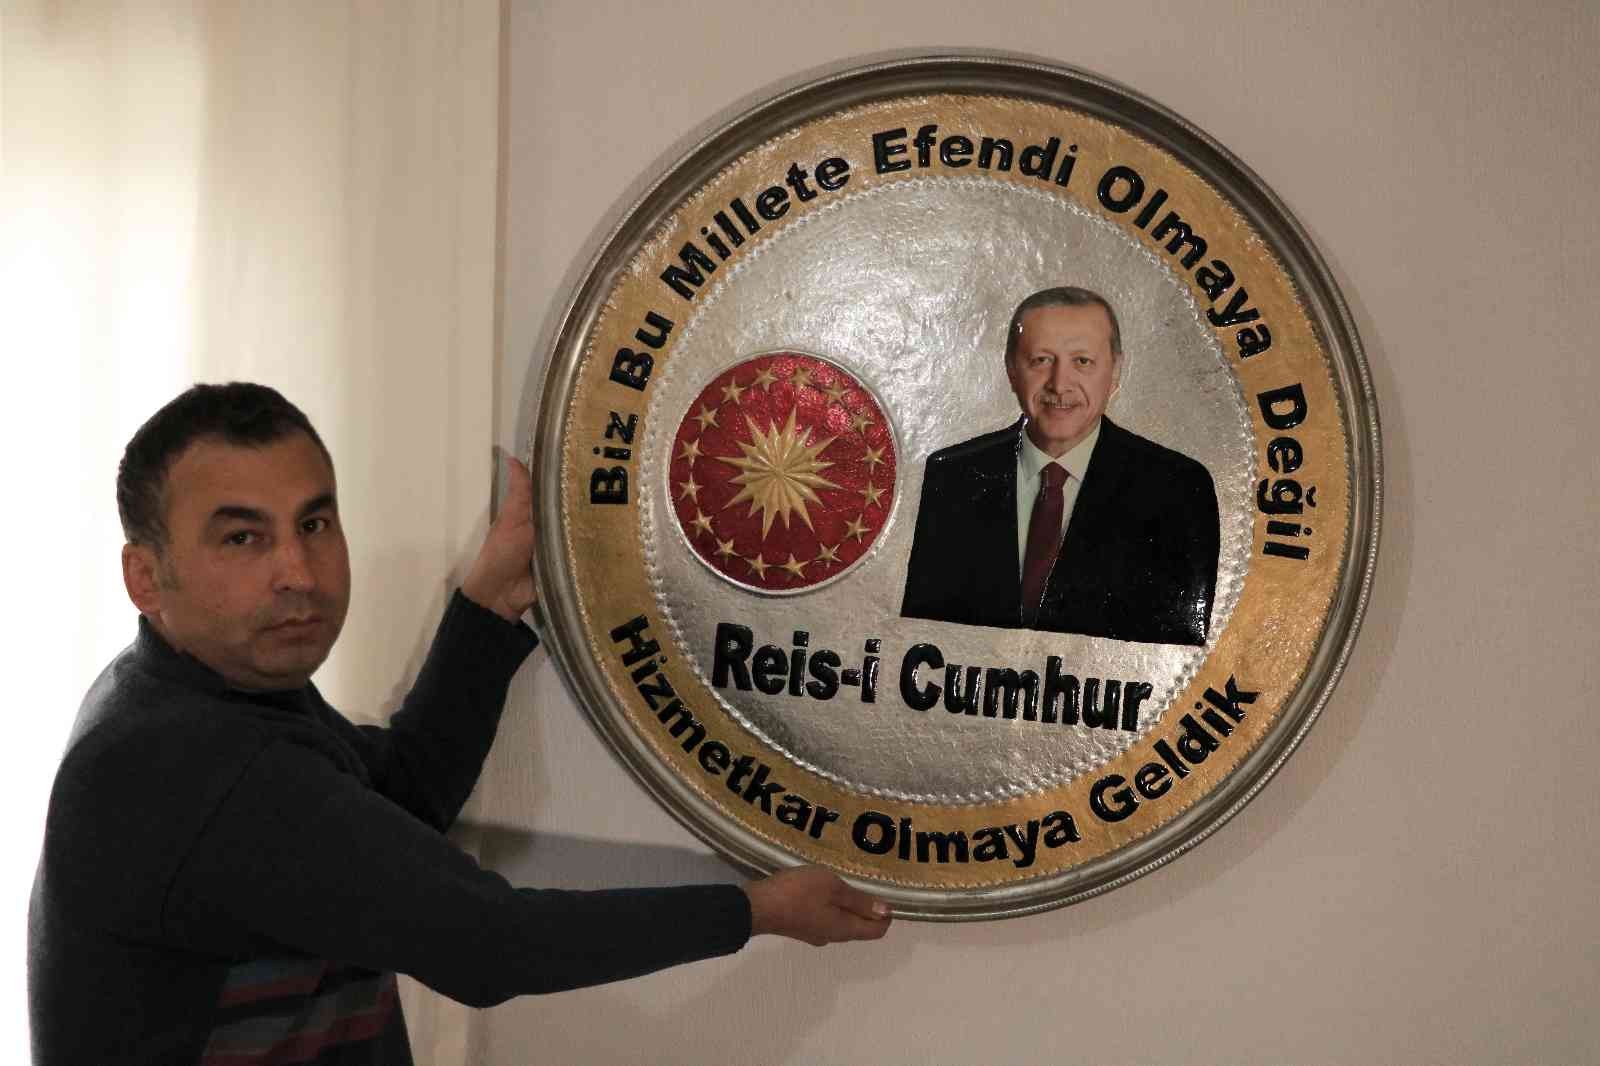 Cumhurbaşkanı Erdoğan’a üzerinde portresi bulunan bakır tepsiyi hediye etmek istiyor #kahramanmaras